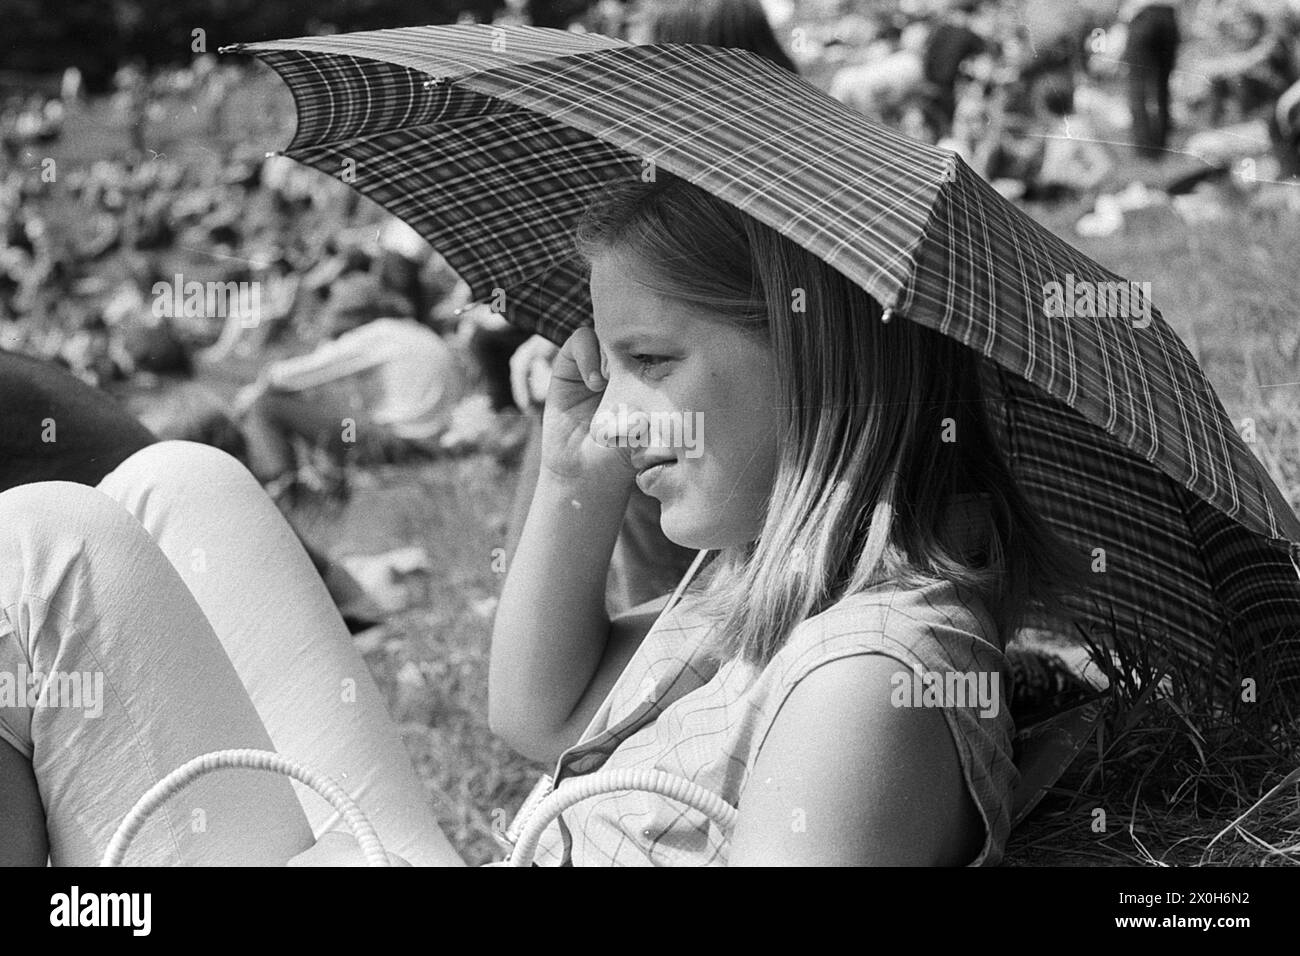 Una giovane donna si protegge dal sole con un ombrello. Foto di un festival al Thingstätte di Heidelberg, 1970. [traduzione automatizzata] Foto Stock